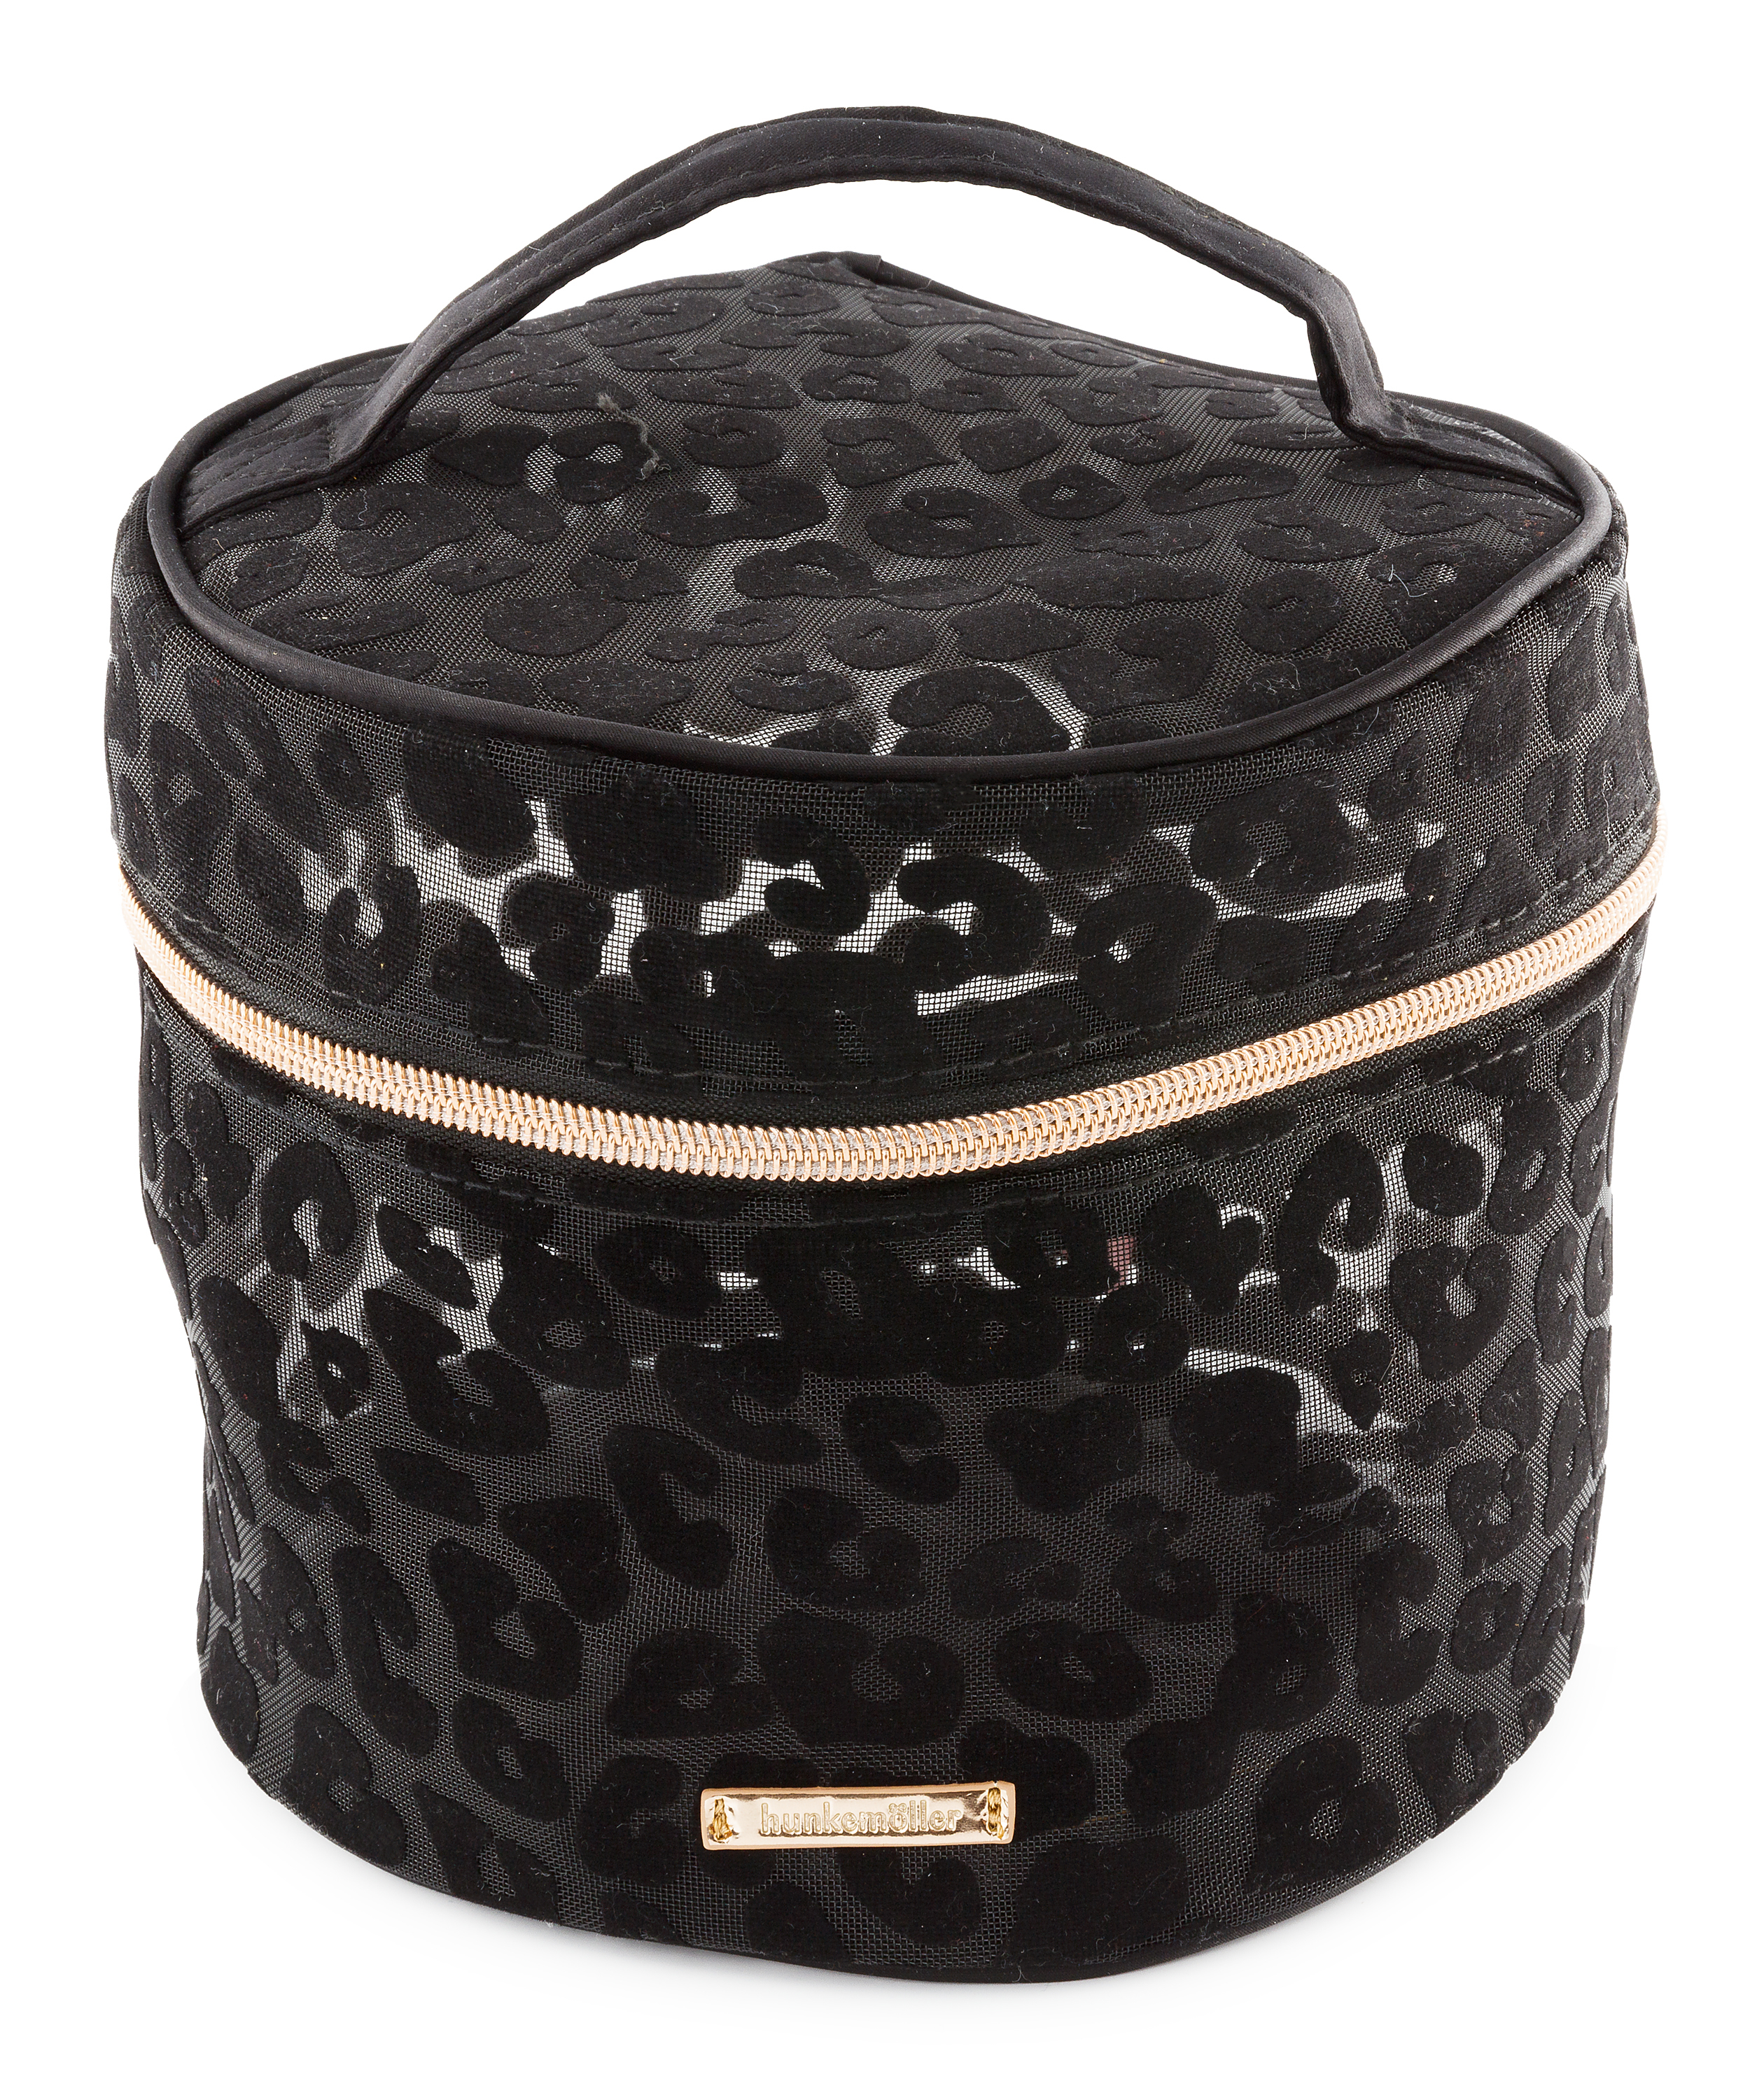 Leopard Large Make-Up Bag, Black, main